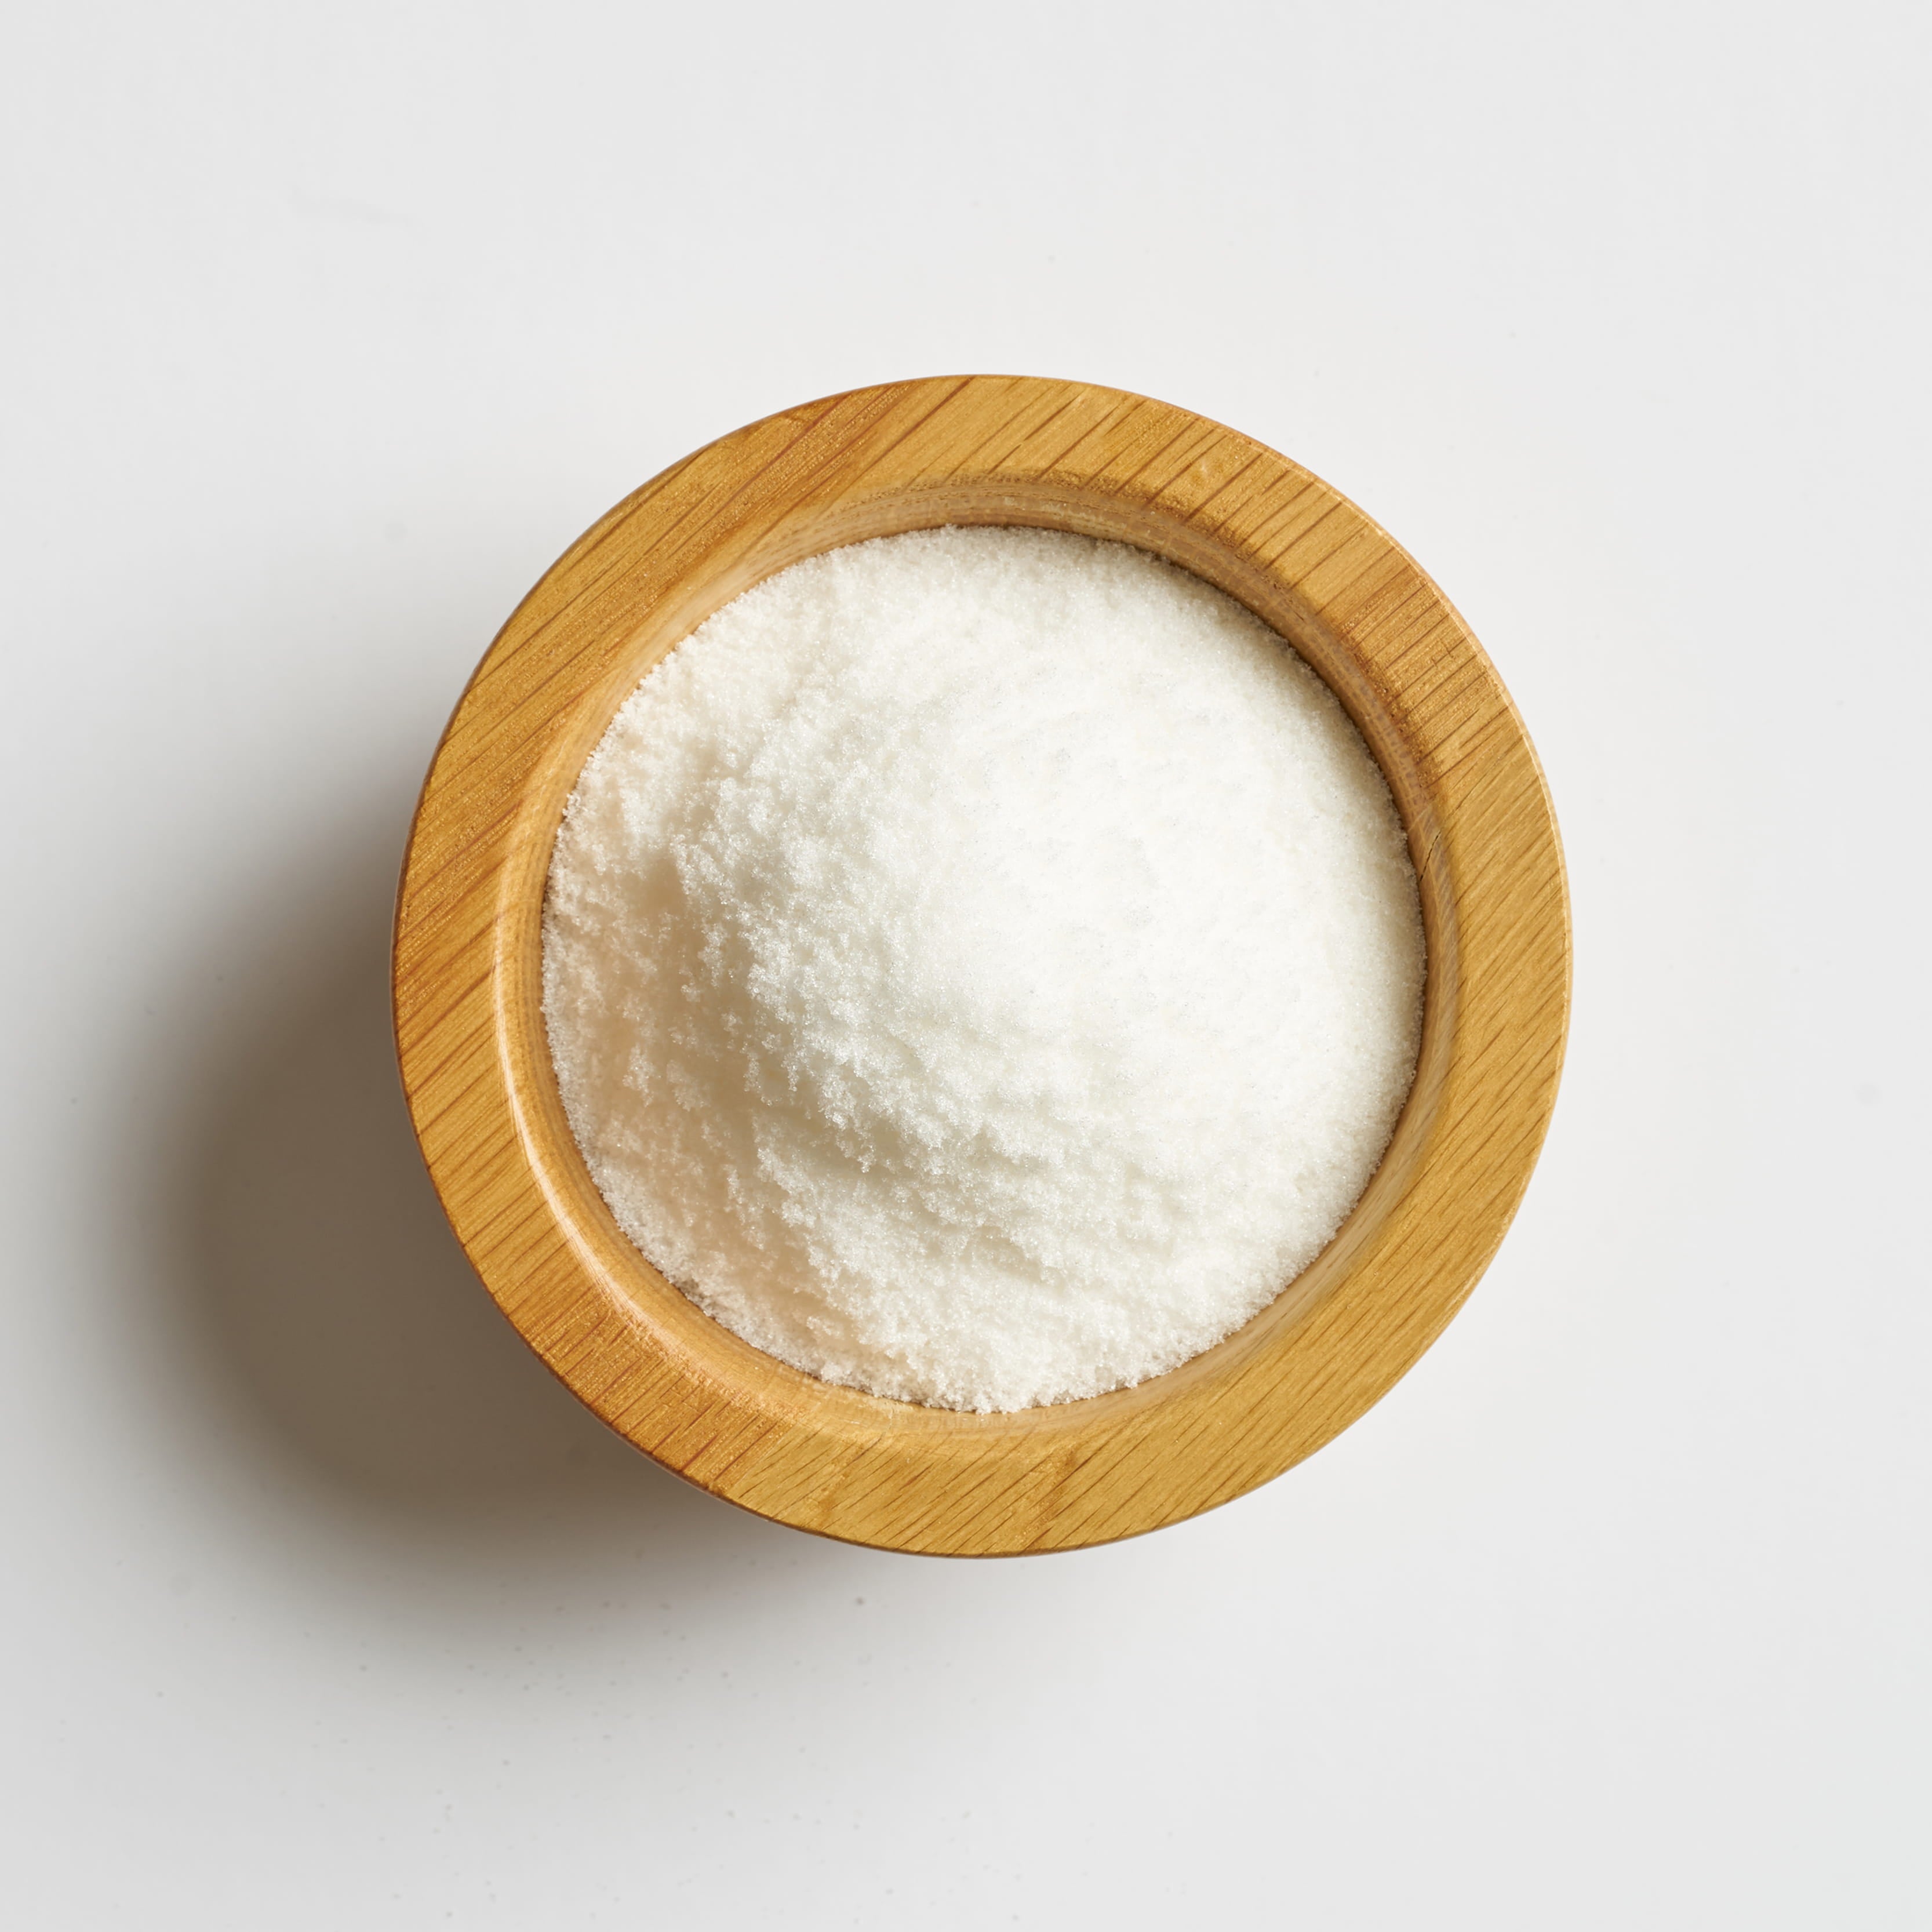 Lo llamamos clásico por qué su color y sabor es similar al azúcar blanca clásica convencional. 2:1 equivale al dulzor del azúcar, son doblemente más dulces que una cuchara de azúcar de caña o morena.